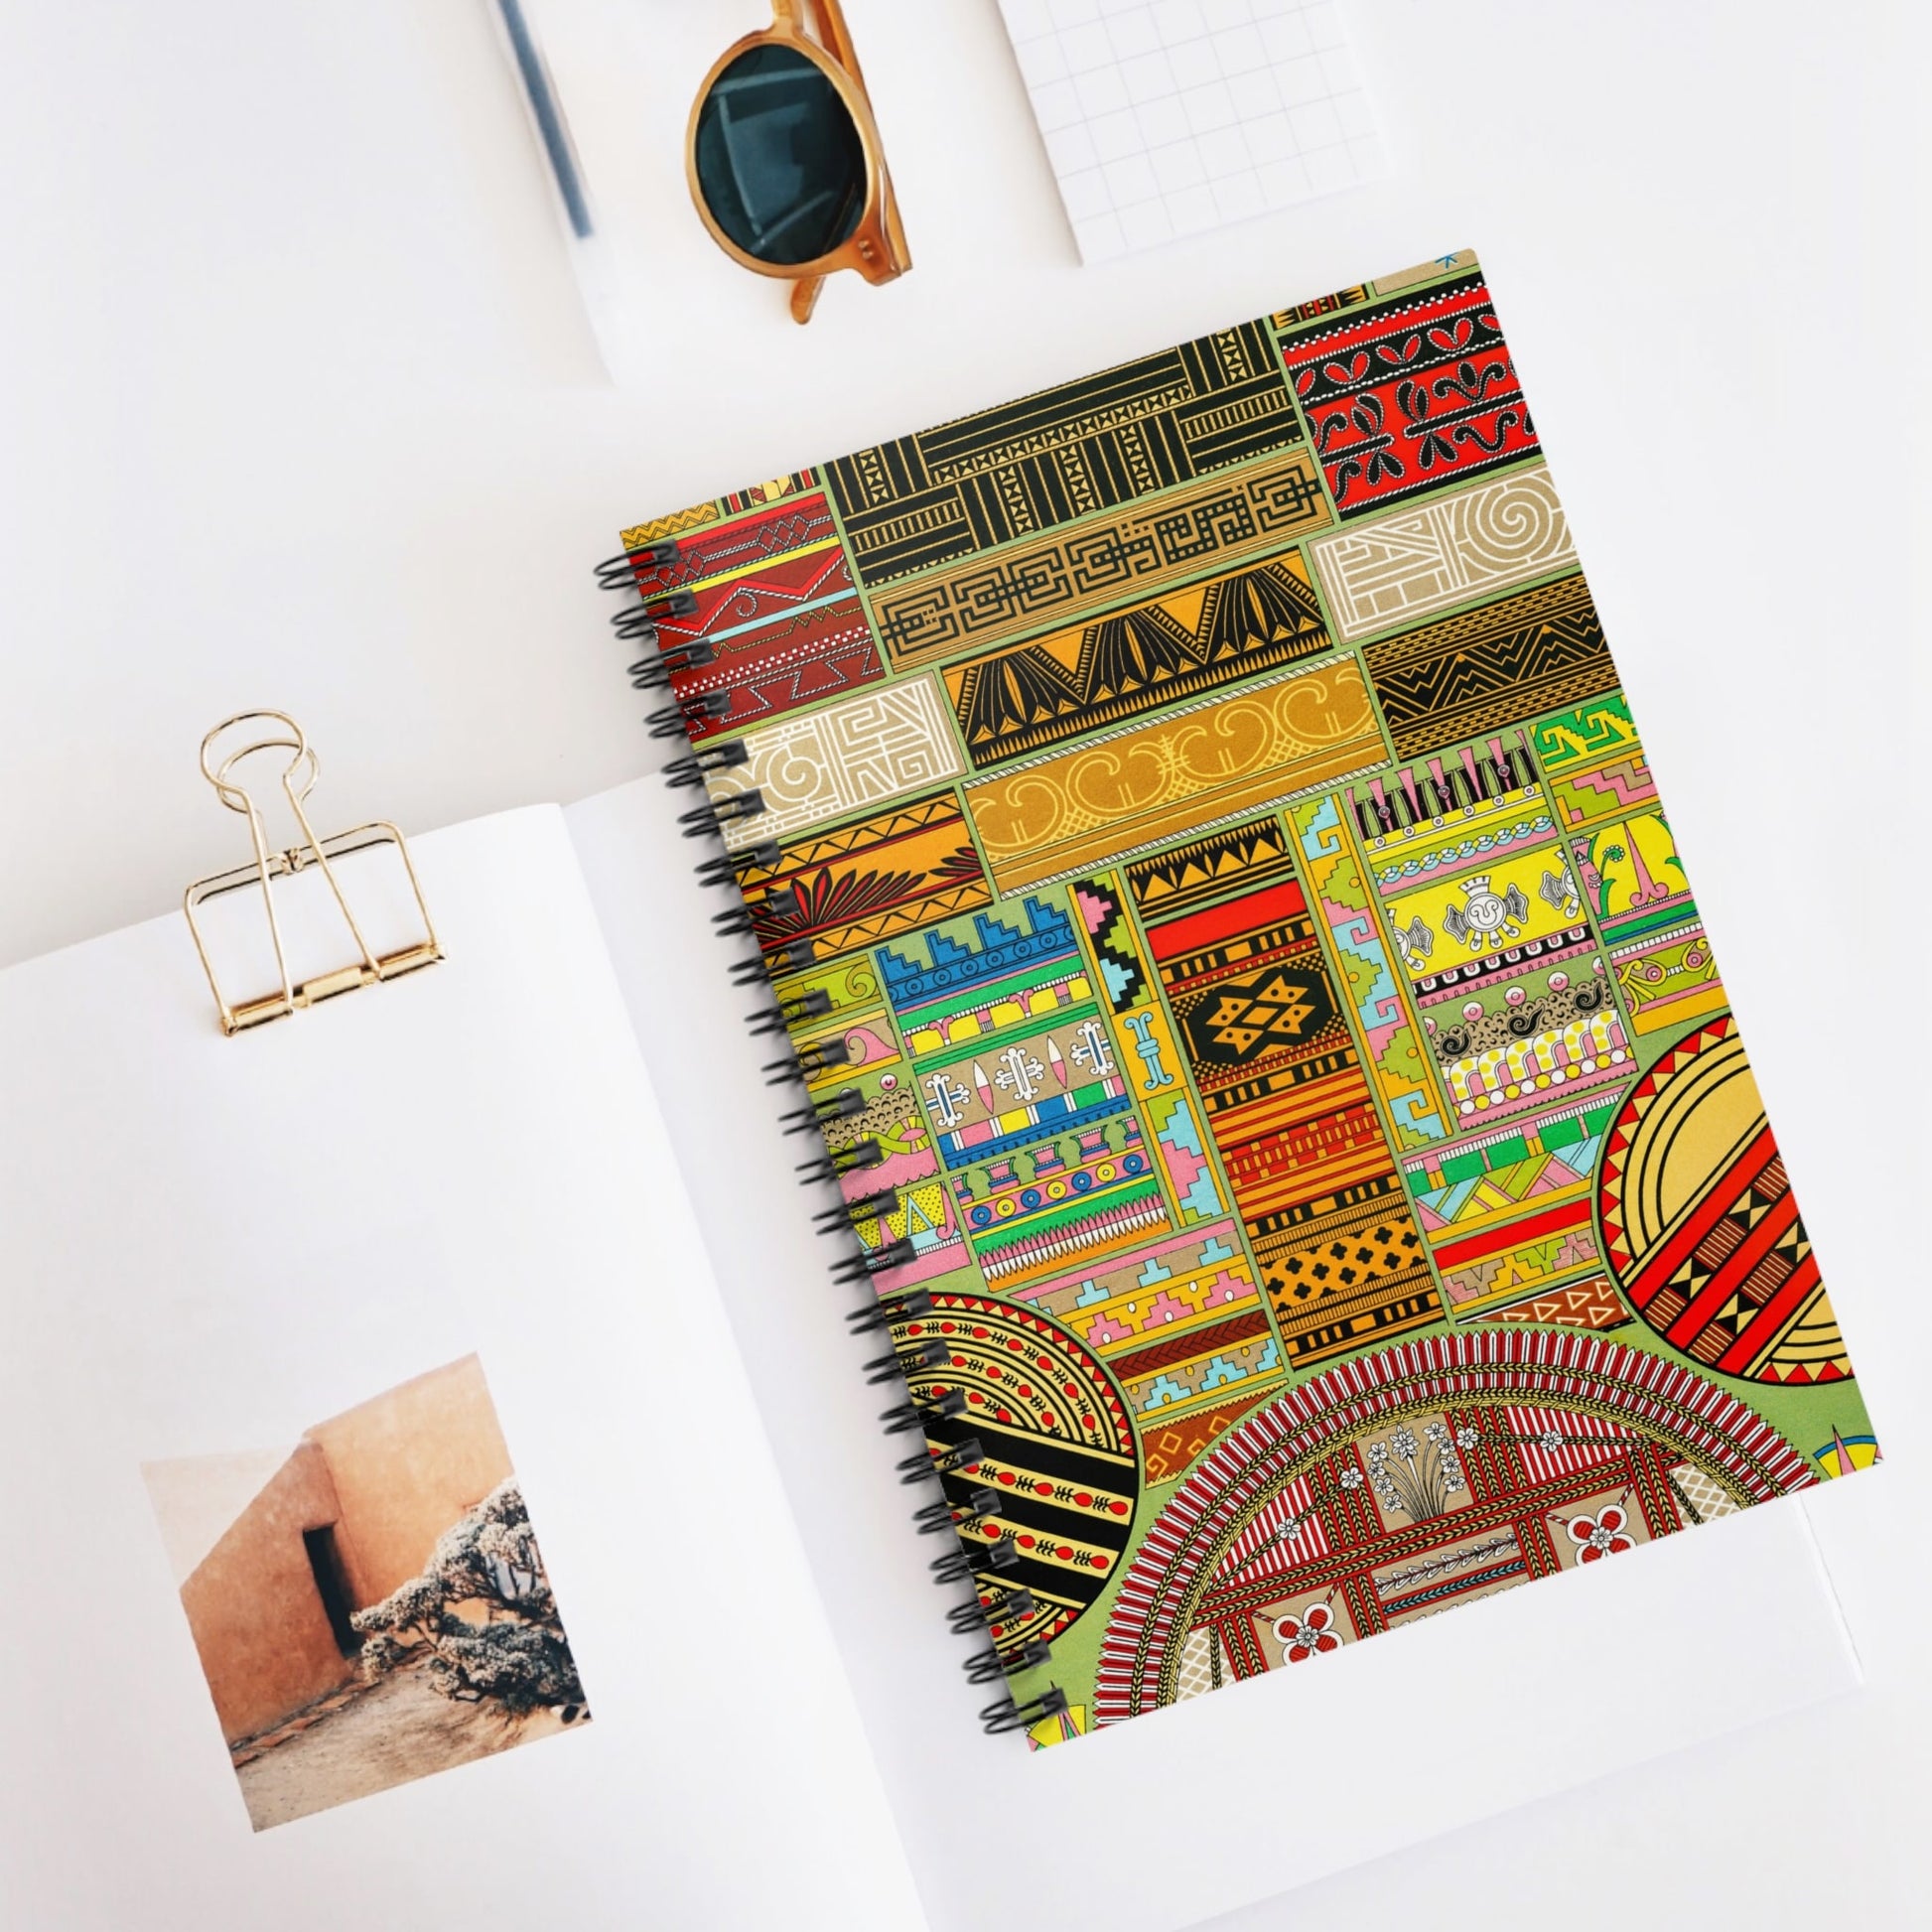 Design Inspiration Spiral Notebook Displayed on Desk